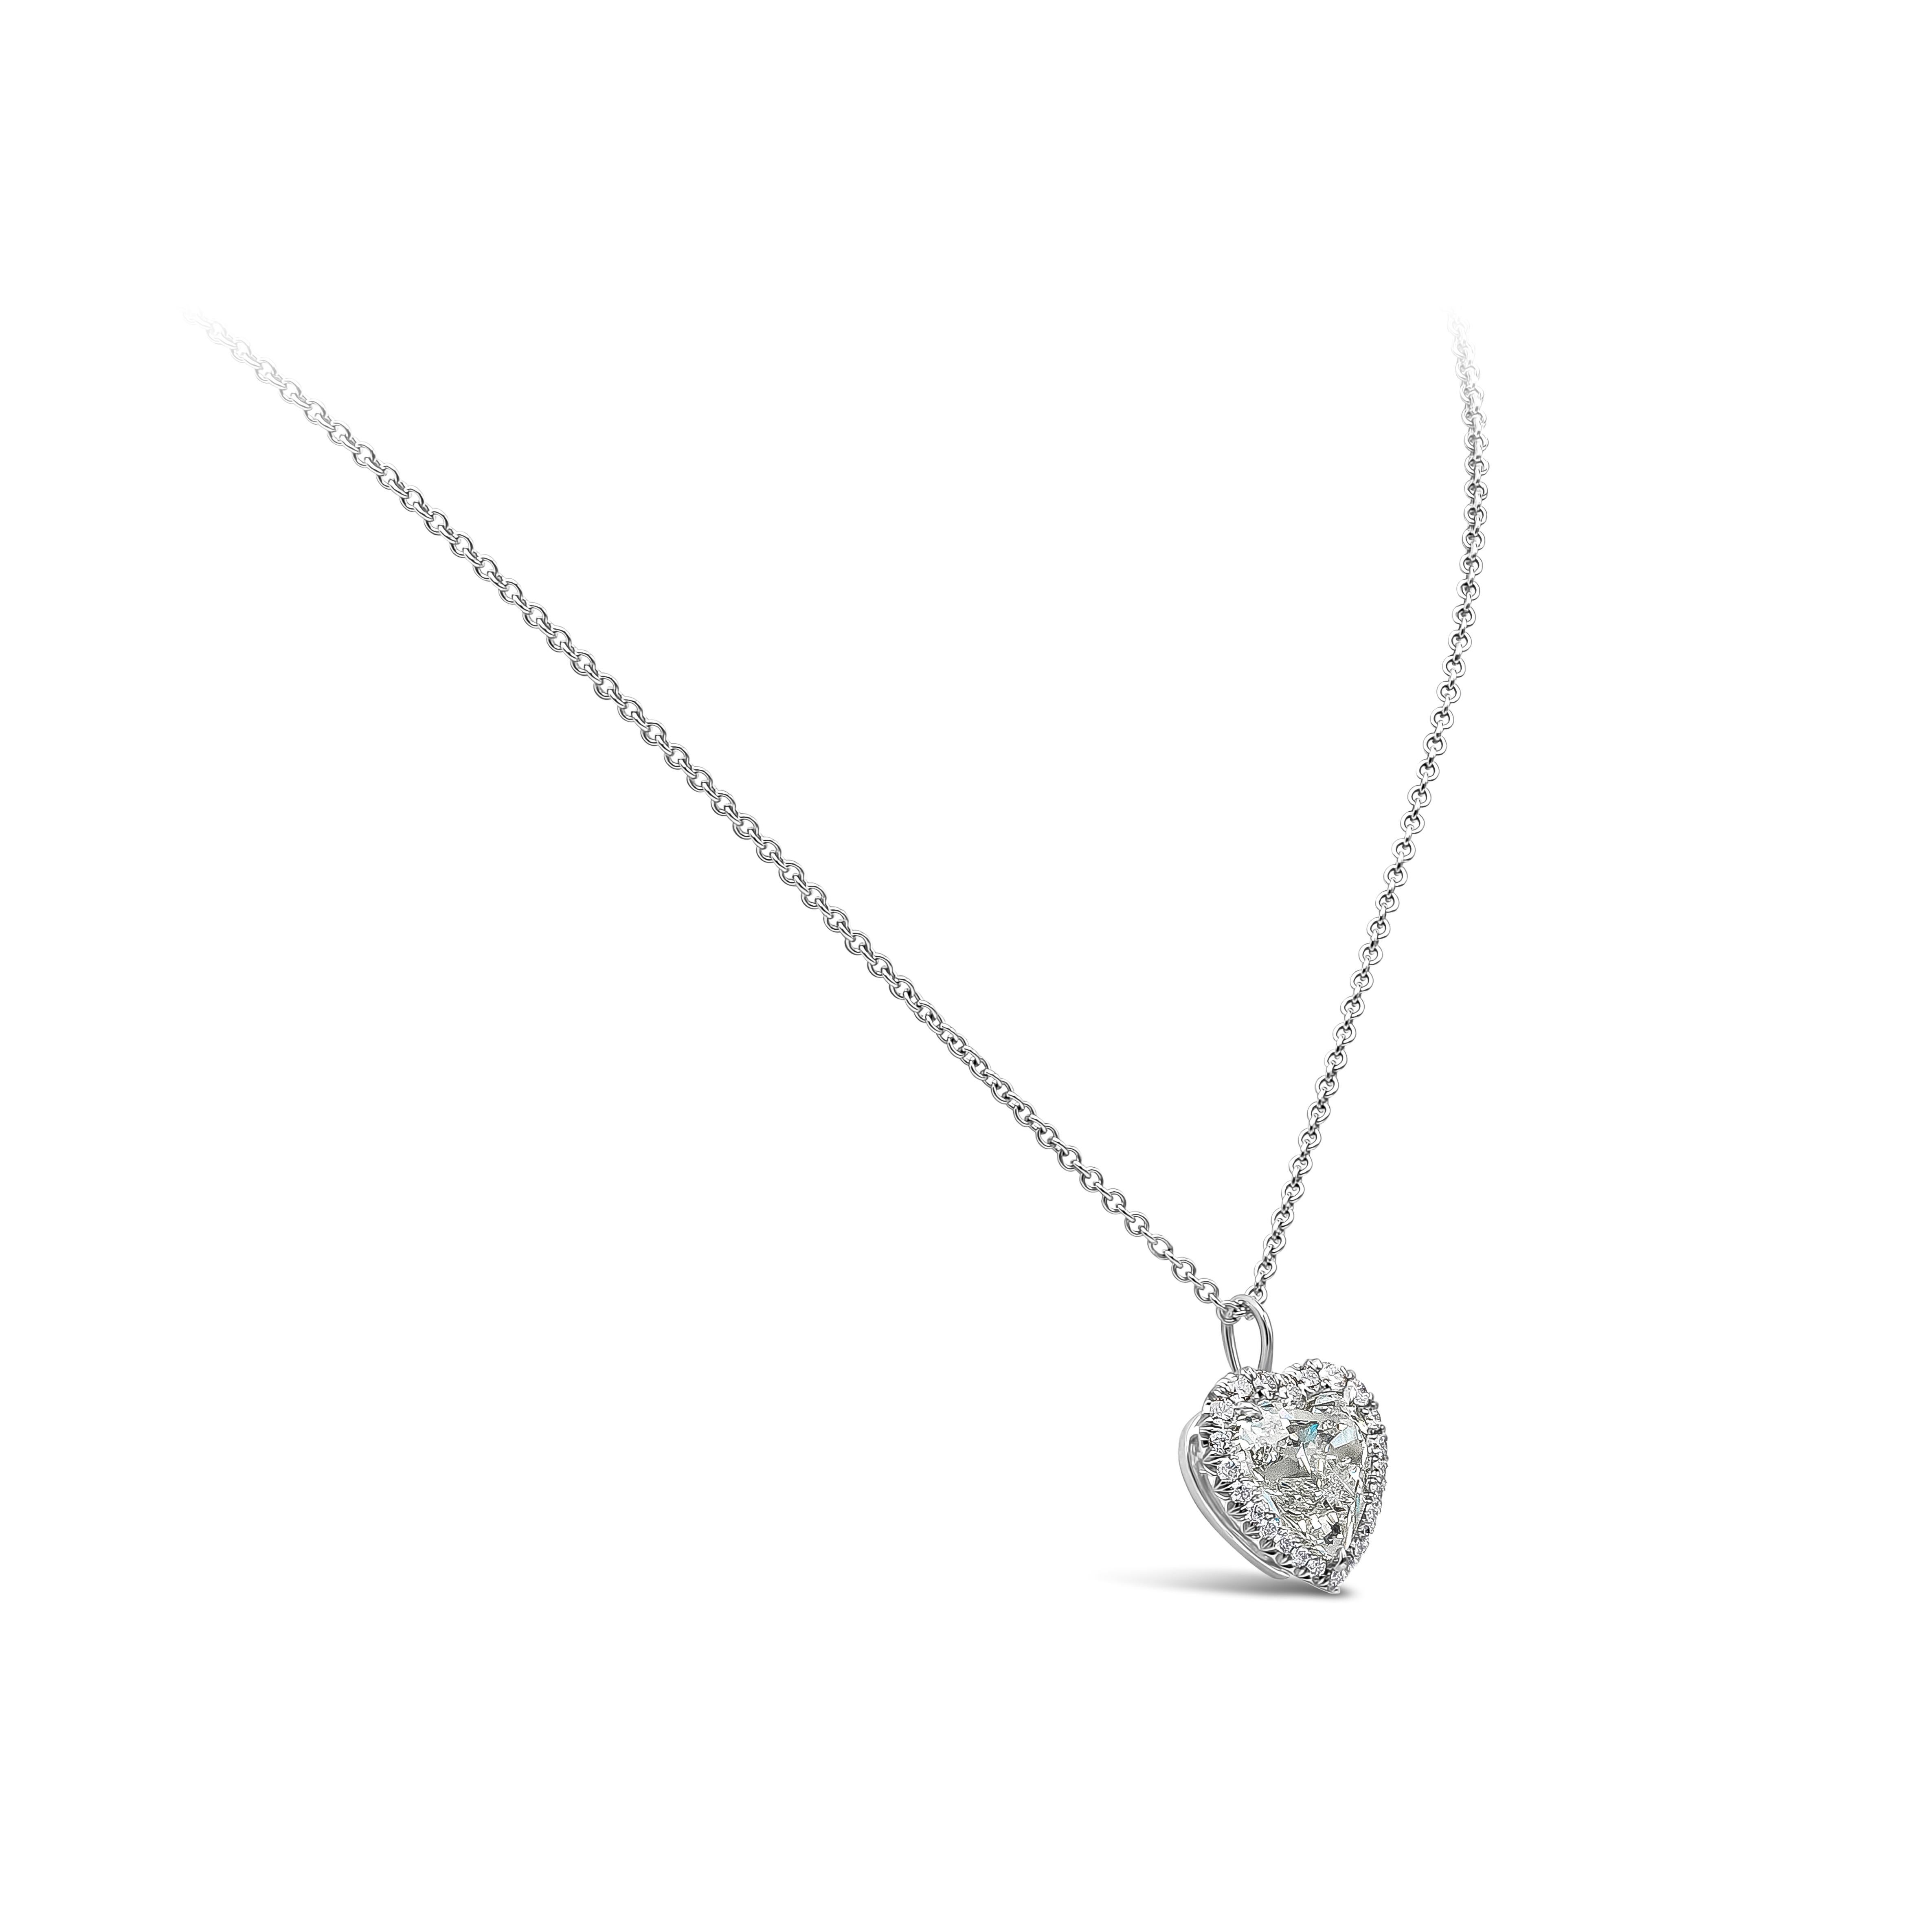 Collier pendentif halo unique et polyvalent mettant en valeur un diamant en forme de cœur de 5,01 carats certifié par le GIA de couleur H et de pureté VS2. Autour du diamant central se trouve une rangée de 27 pièces de diamants ronds de taille